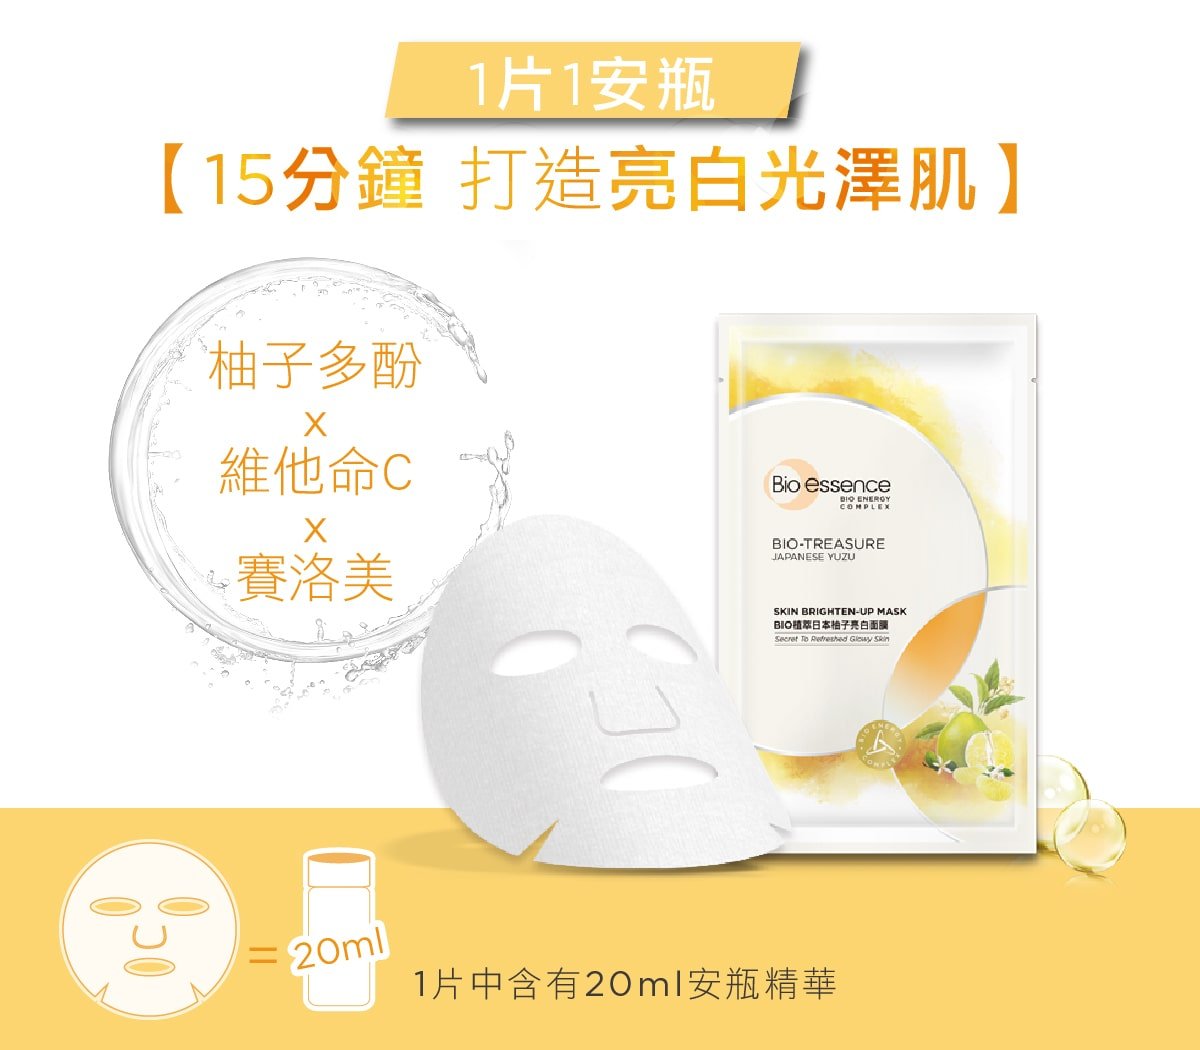  Skin Brighten Up Mask - Ingredient